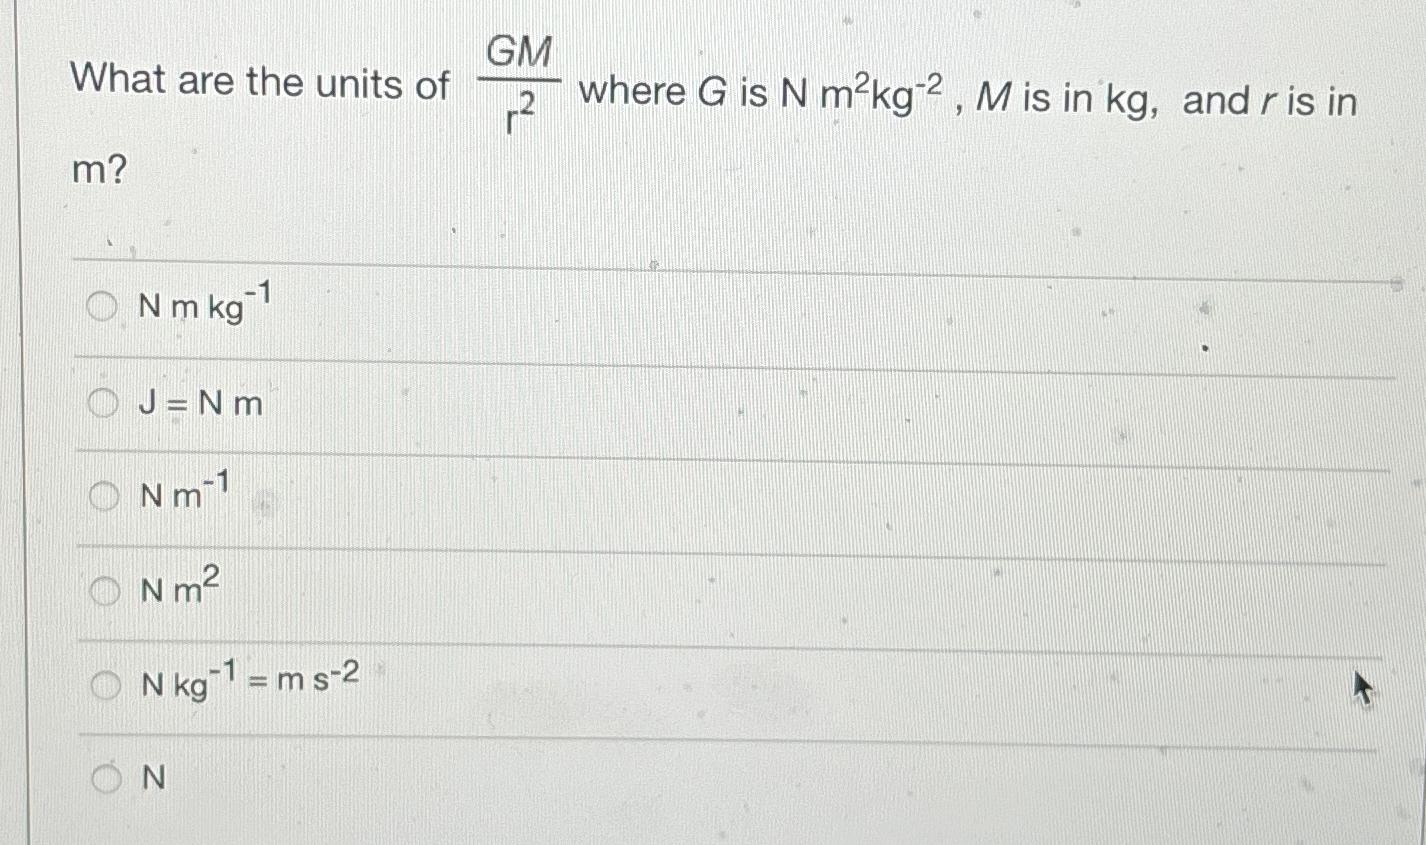 What are the units of m? N m kg-1 J=Nm Nm-1 m N kg 1 = m s-2 N m N GM where G is N mkg-2, M is in kg, and r